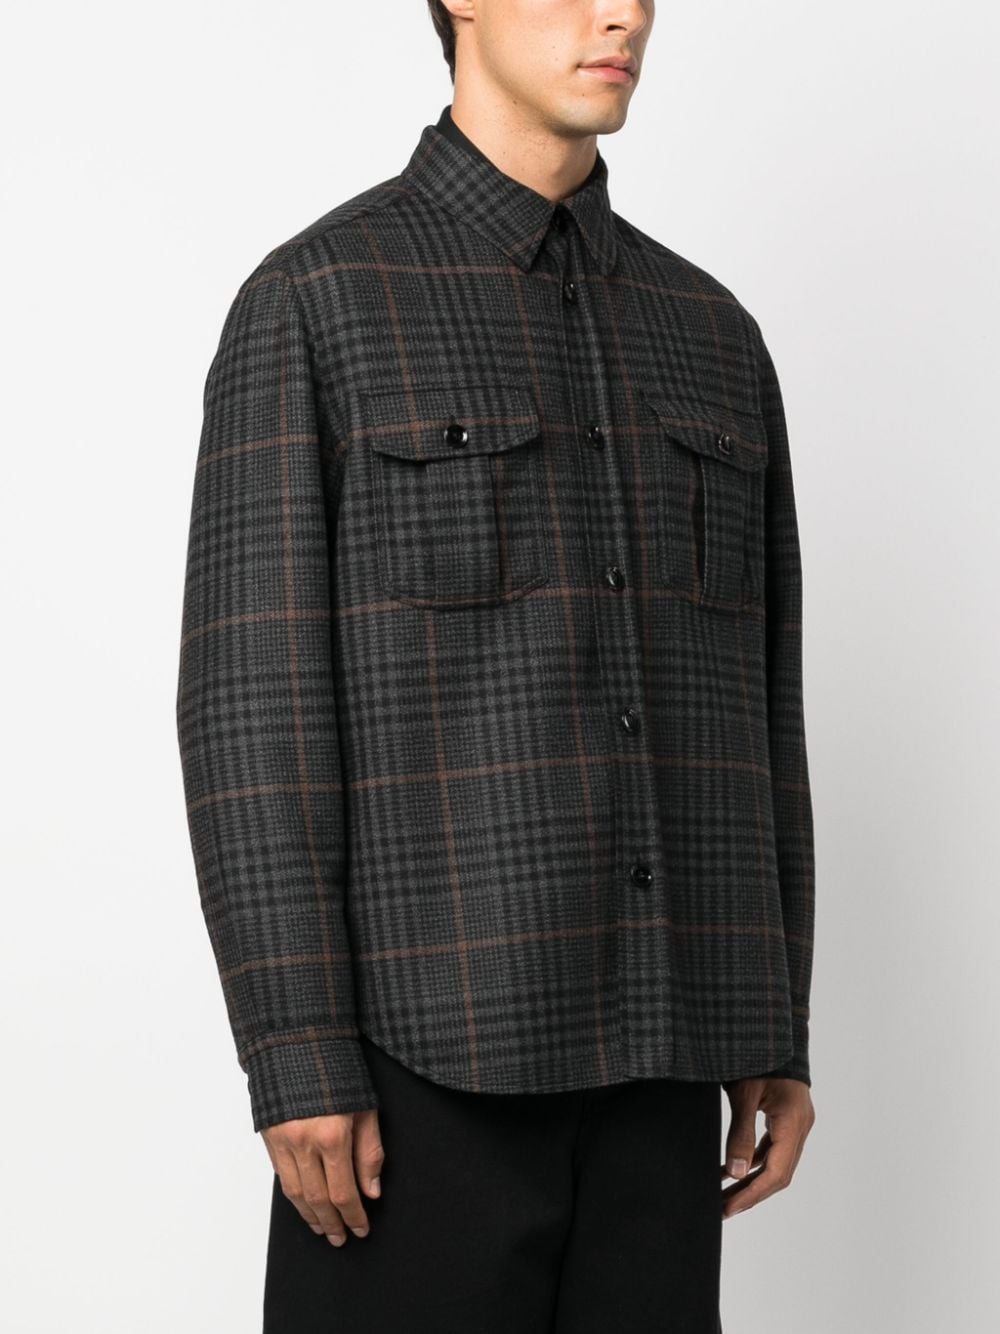 Designer män jacka brioni check-print stickad skjorta jacka fjäder ytterkläder casual kläder långärmare jackor lapel hals toppar